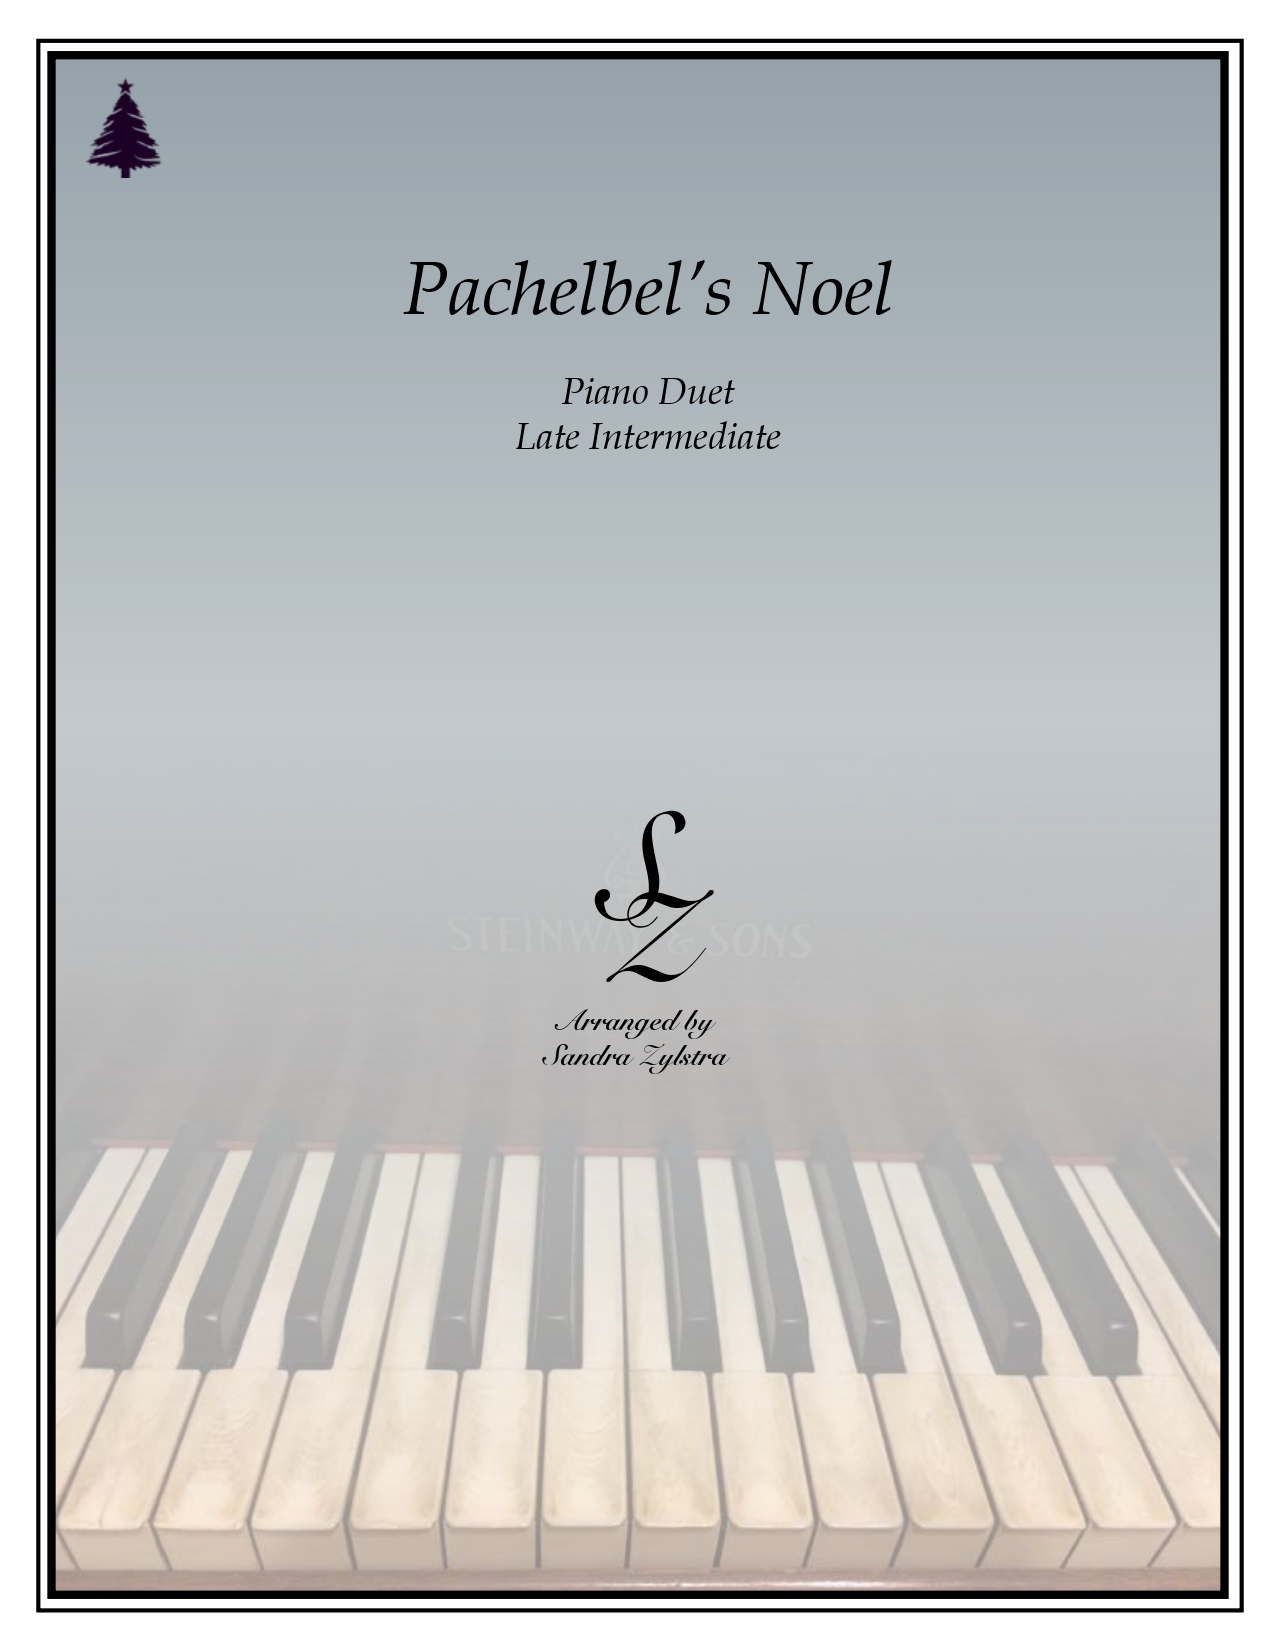 Pachelbels Noel late intermediate duet cover page 00011